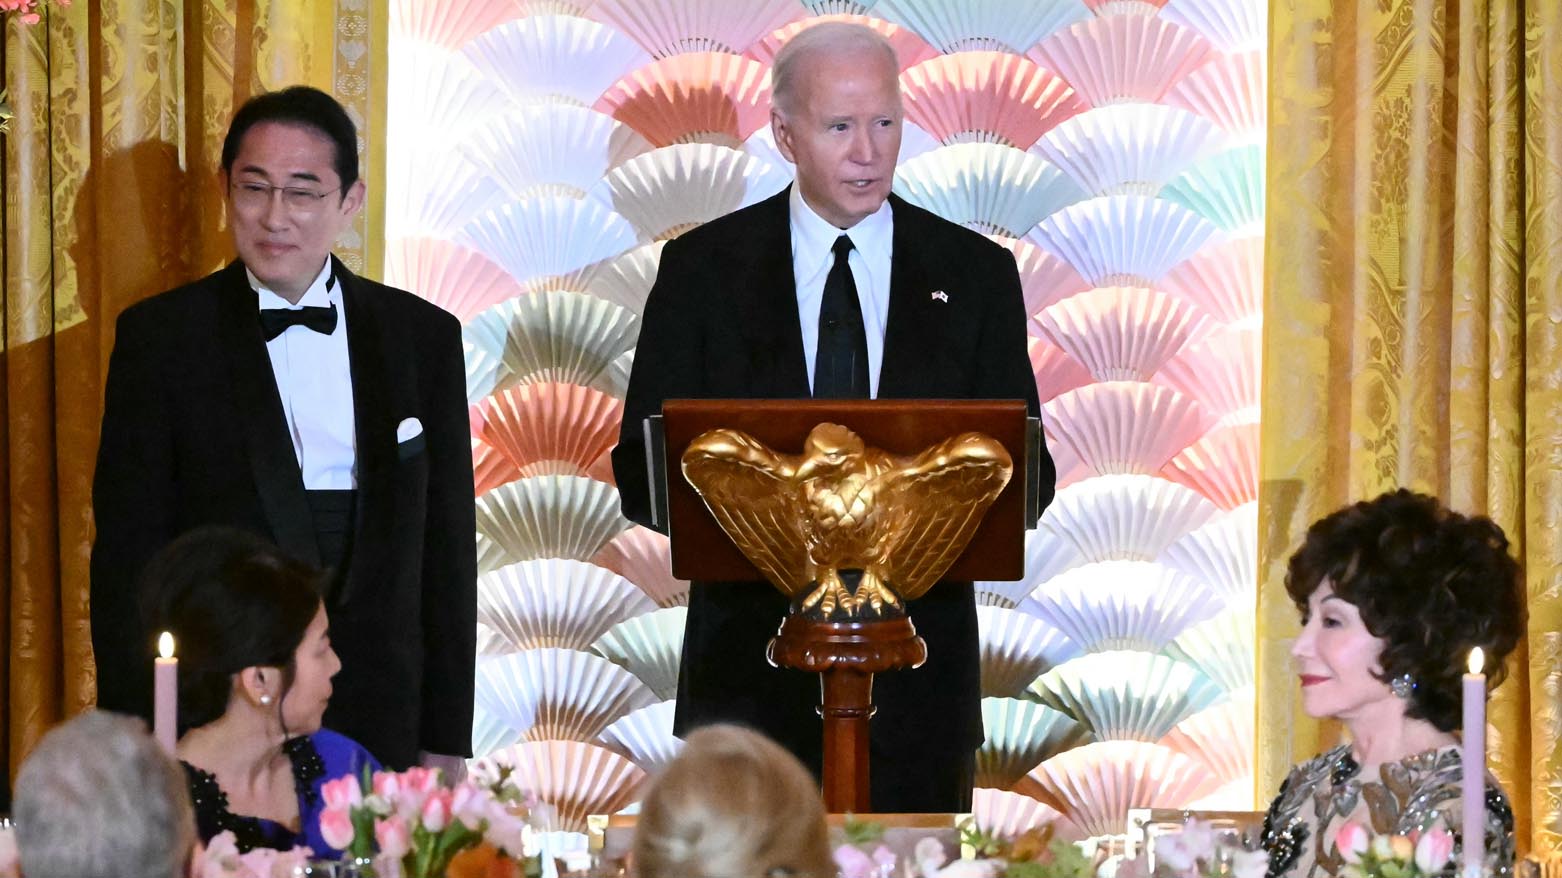 جو بایدن، رئیس جمهور ایالات متحده، در کنار فومیو کیشیدا، نخست وزیر ژاپن در کاخ سفید. ١٠ آوریل ٢٠٢٤. عکس: خبرگزاری فرانسه